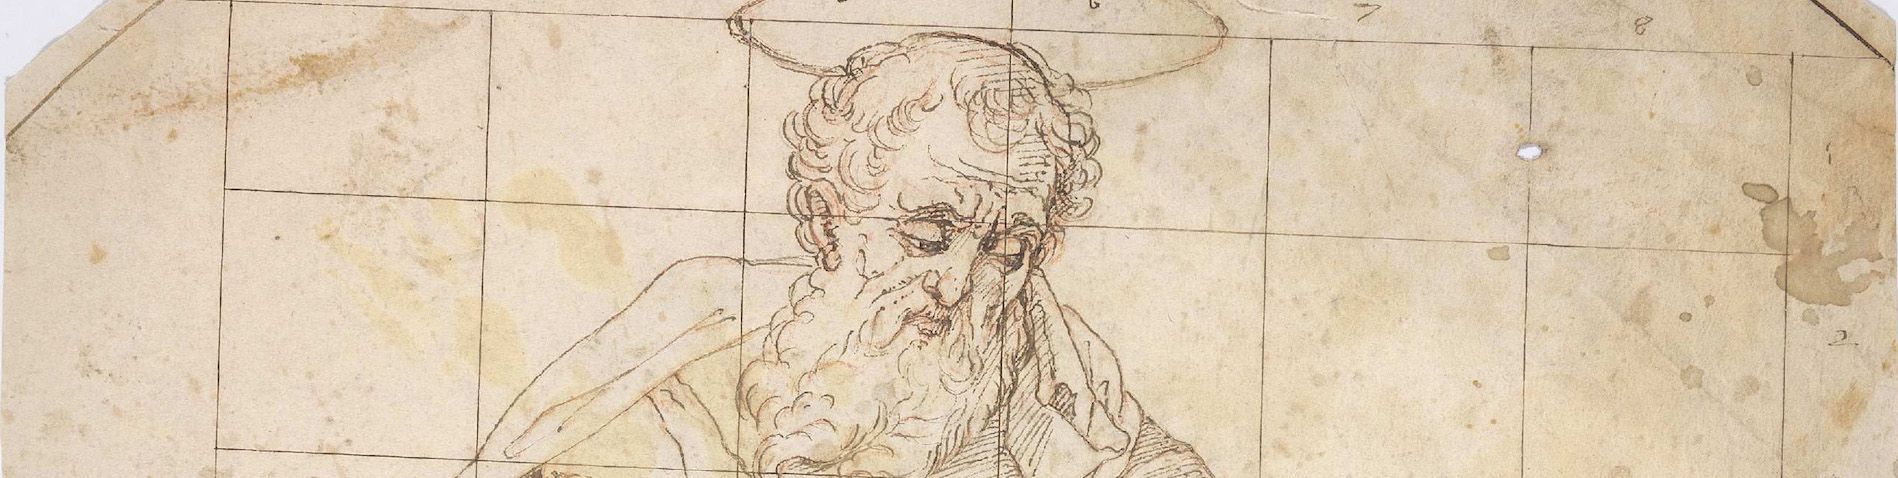 Una mirada renovada a los dibujos renacentistas de la Biblioteca Nacional